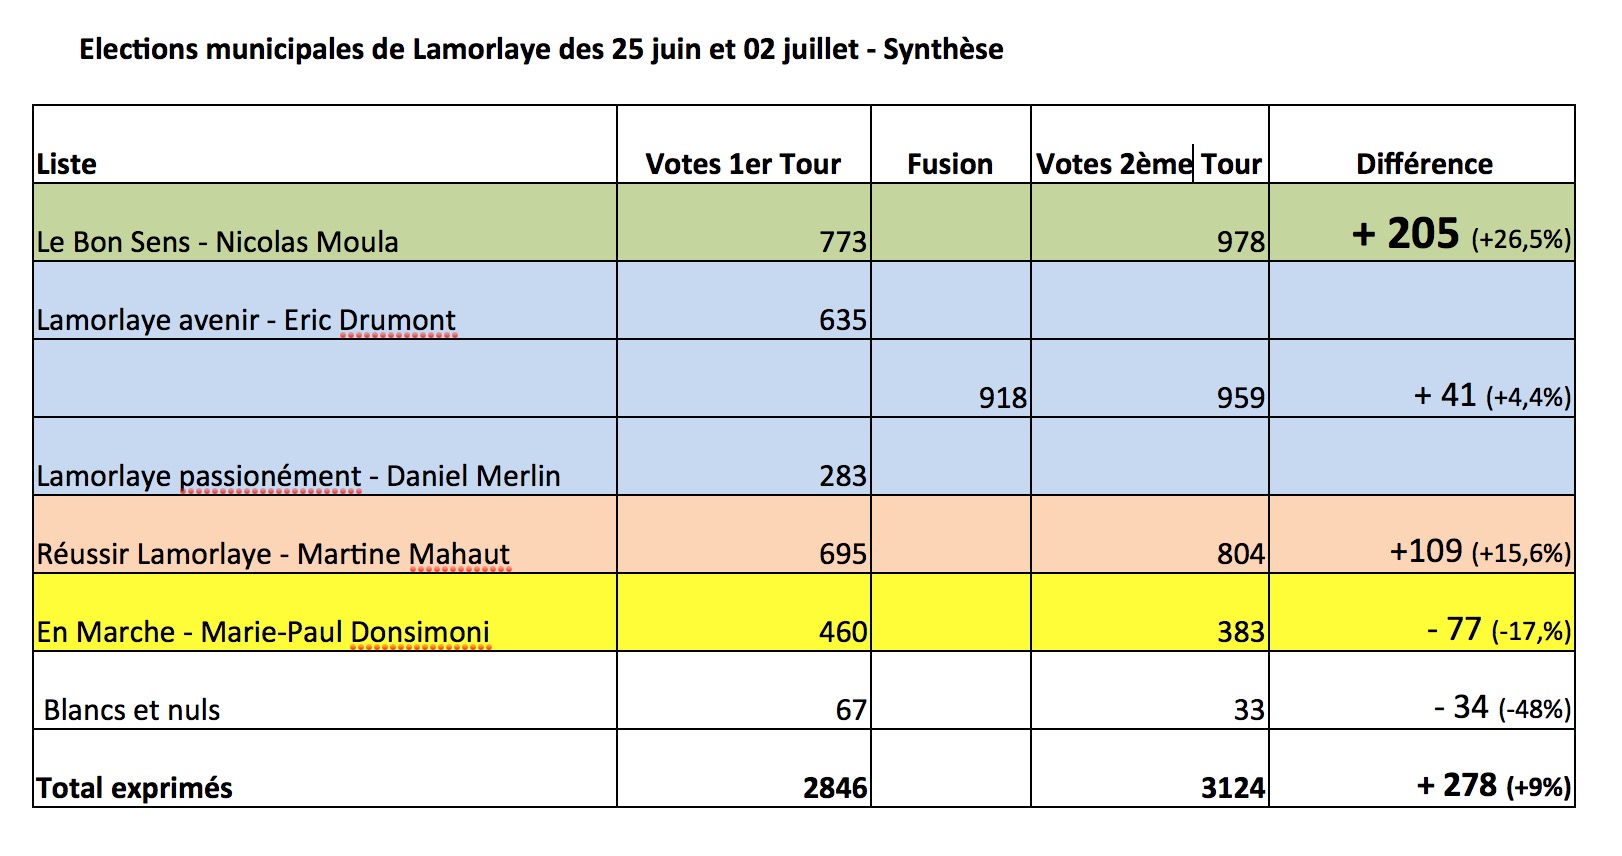 Synthèse des résultats des élections municipales de Lamorlaye